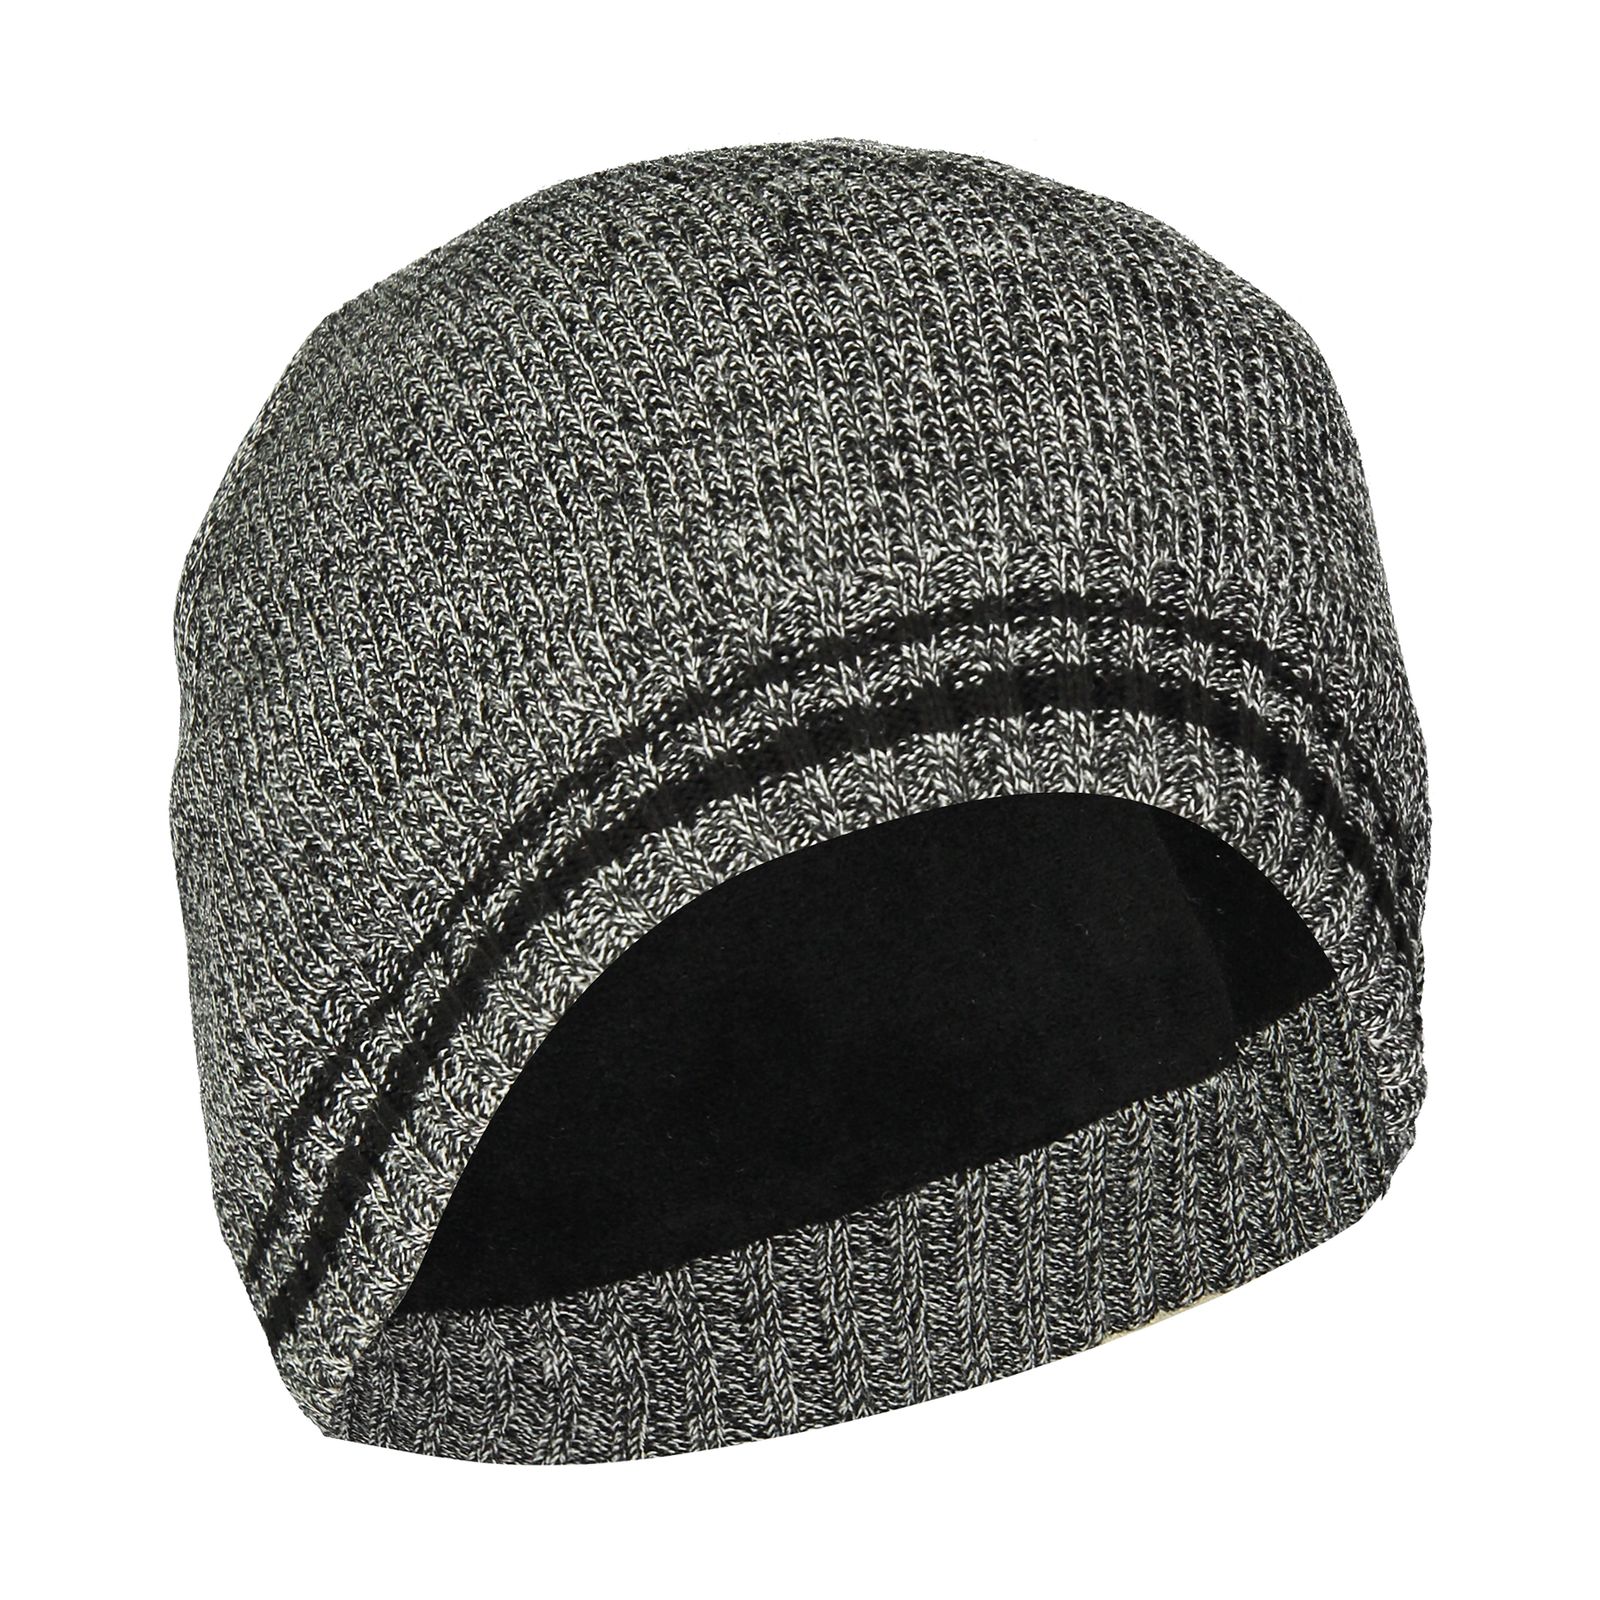 کلاه مردانه کالینز مدل CL1036906-Grey Melange - خاکستری تیره - 1